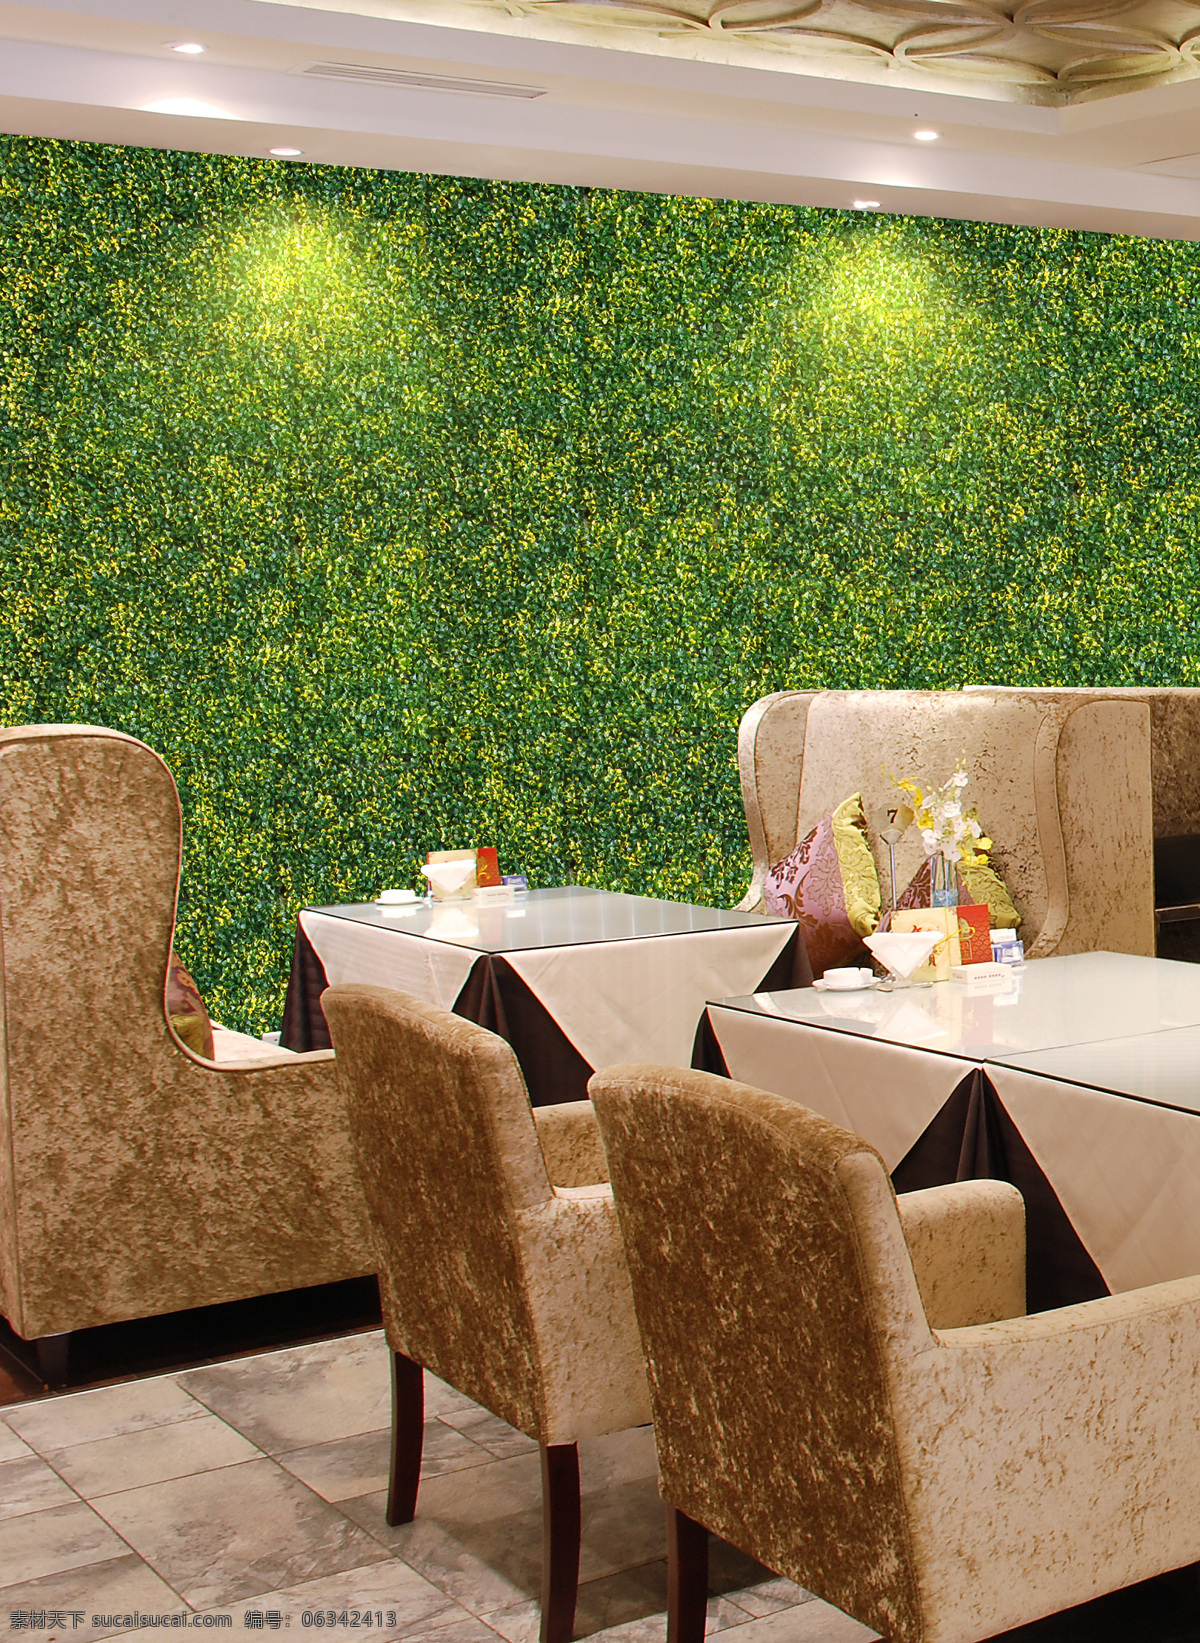 墙面 餐厅装饰 环境设计 绿色 室内设计 植物 装饰 植物背景墙 仿真叶子 仿真植物 家居装饰素材